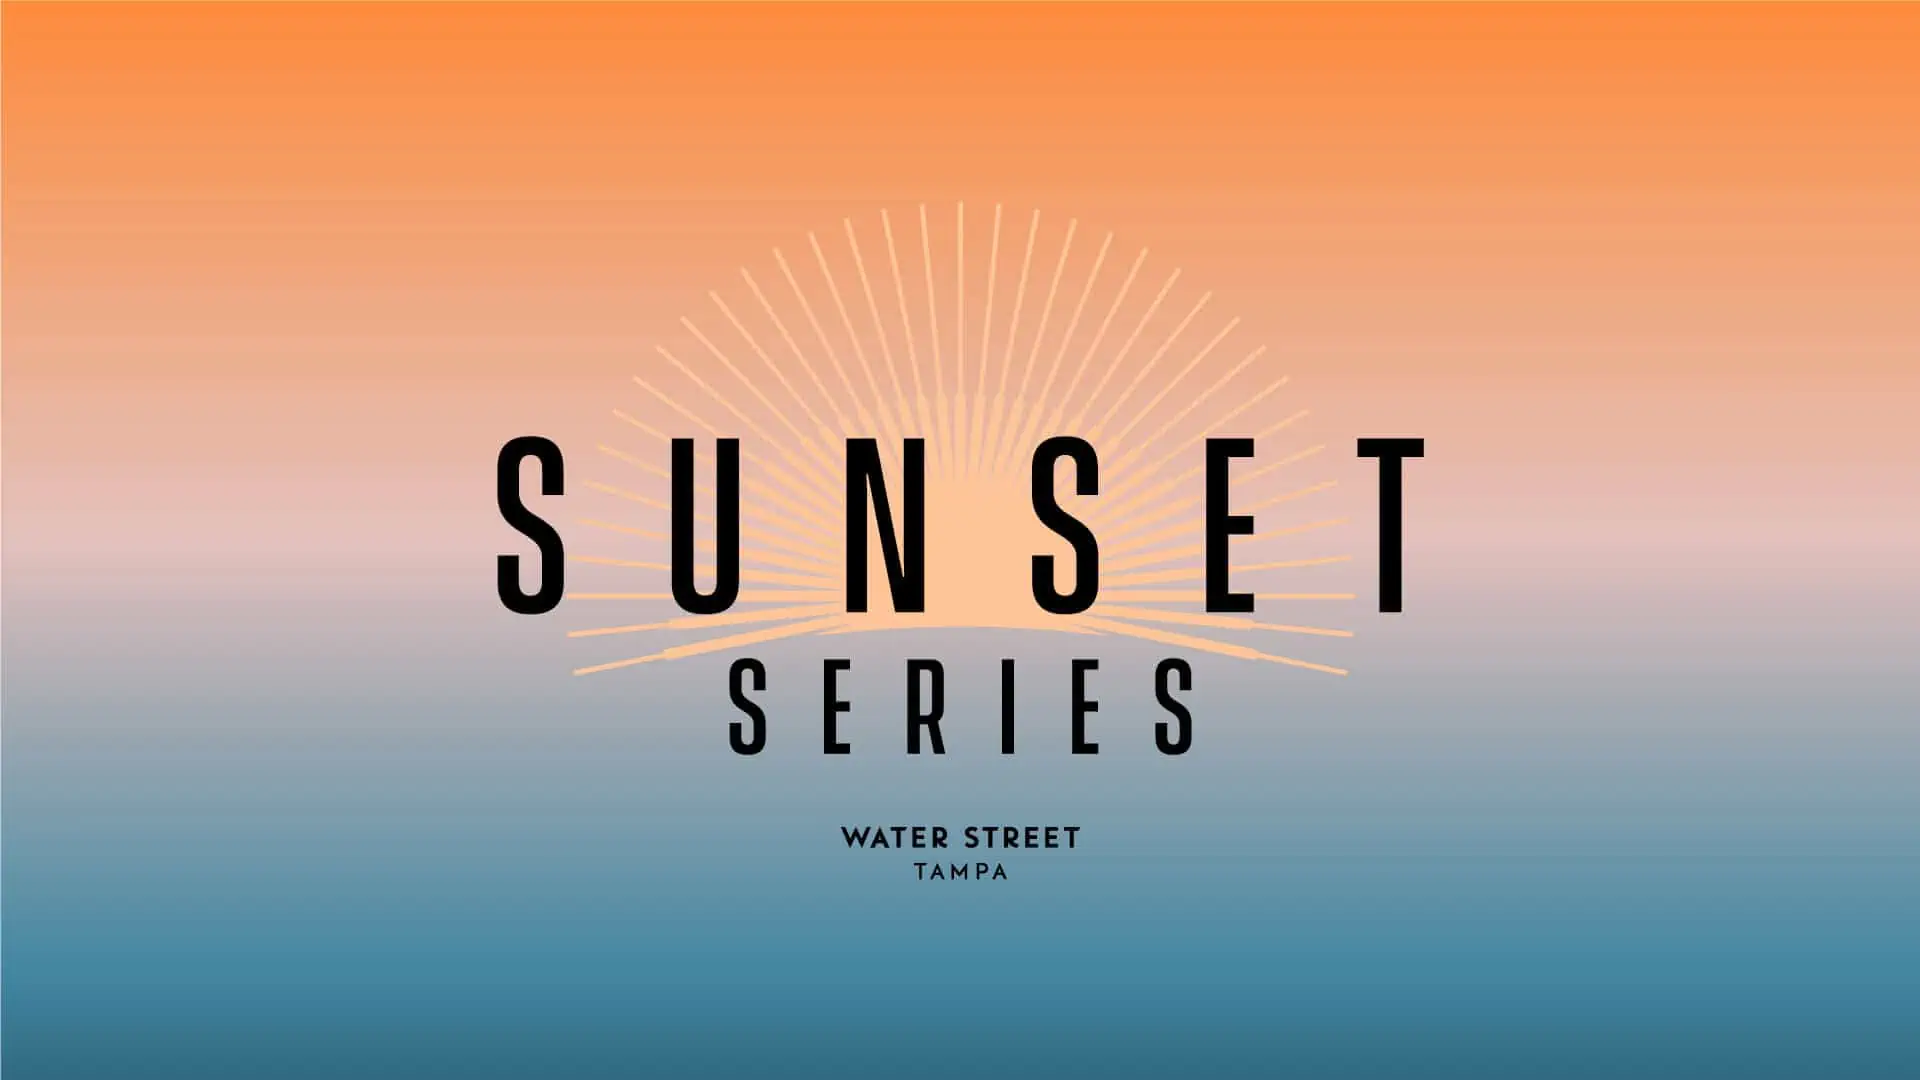 Sunset Series: Street Rhythms at Water Street Tampa